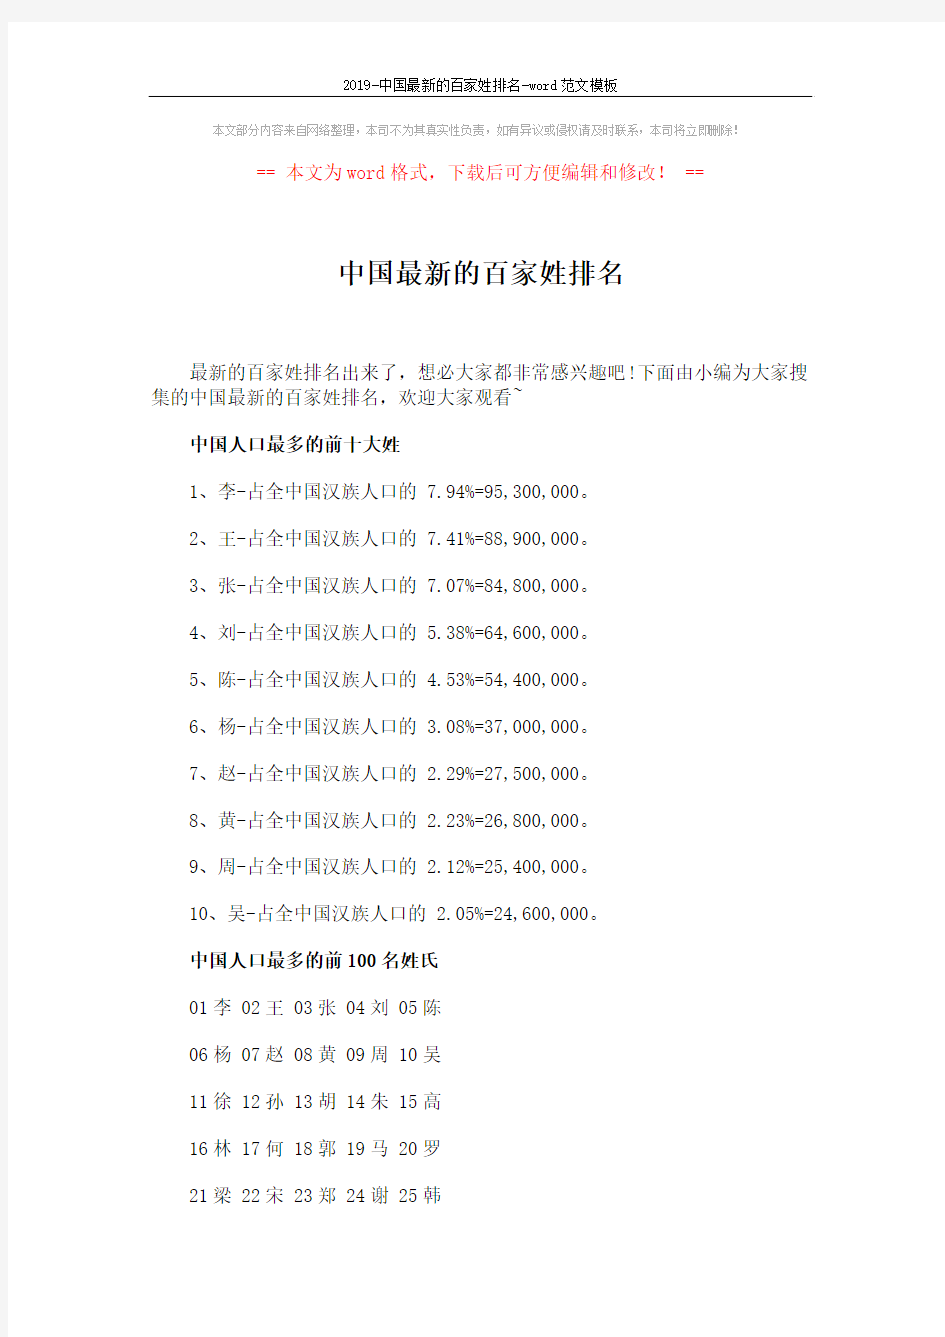 2019-中国最新的百家姓排名-word范文模板 (7页)